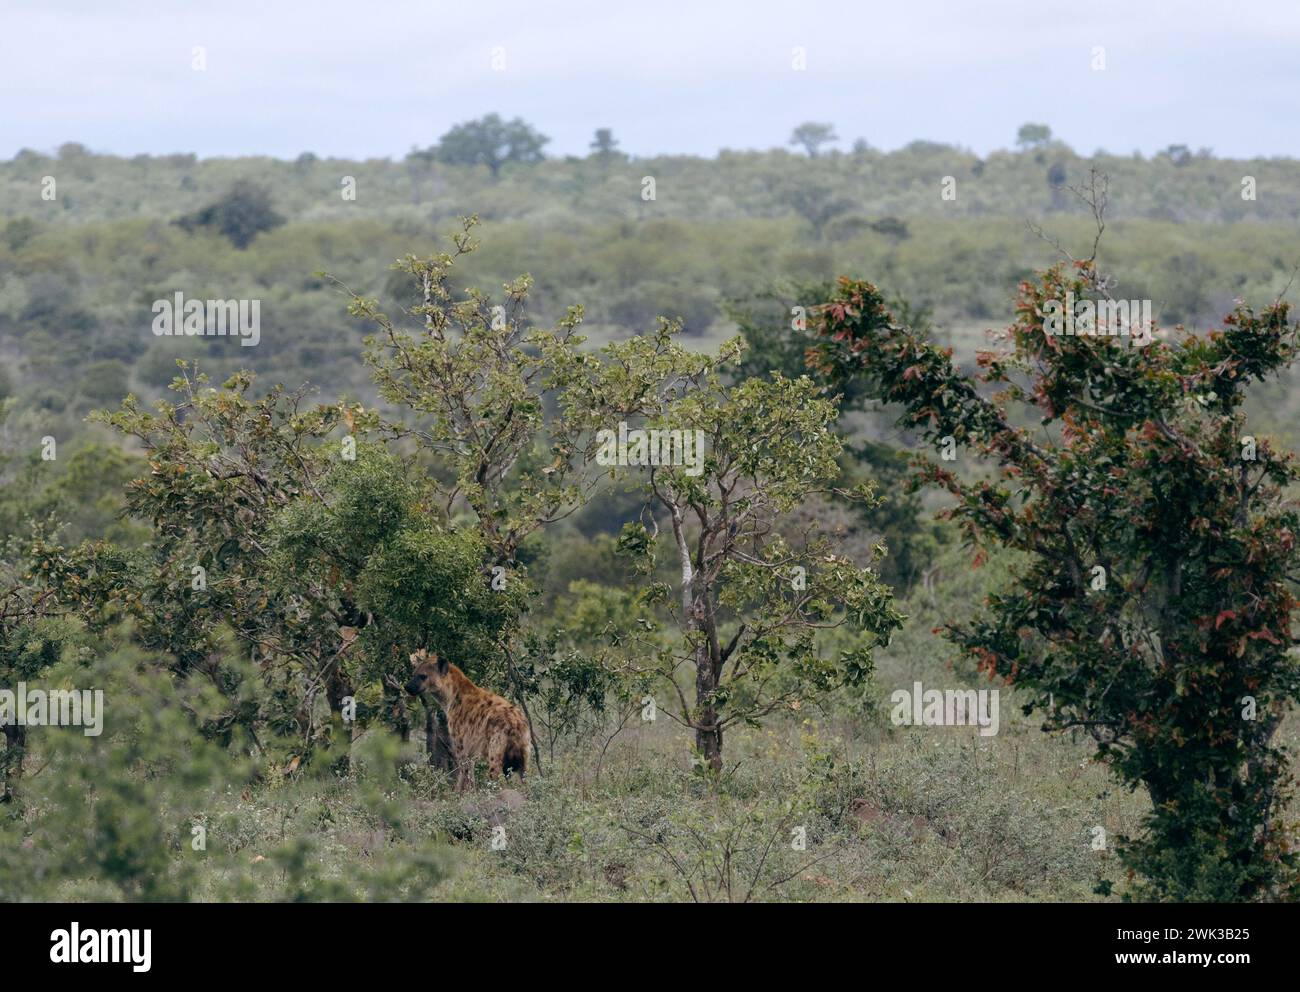 Safari dans la savane sud-africaine. Hyène tachetée rouge dans l'habitat naturel, la nature sauvage, se dresse près des arbres verts bas et des buissons. Animaux de la faune de retour Banque D'Images